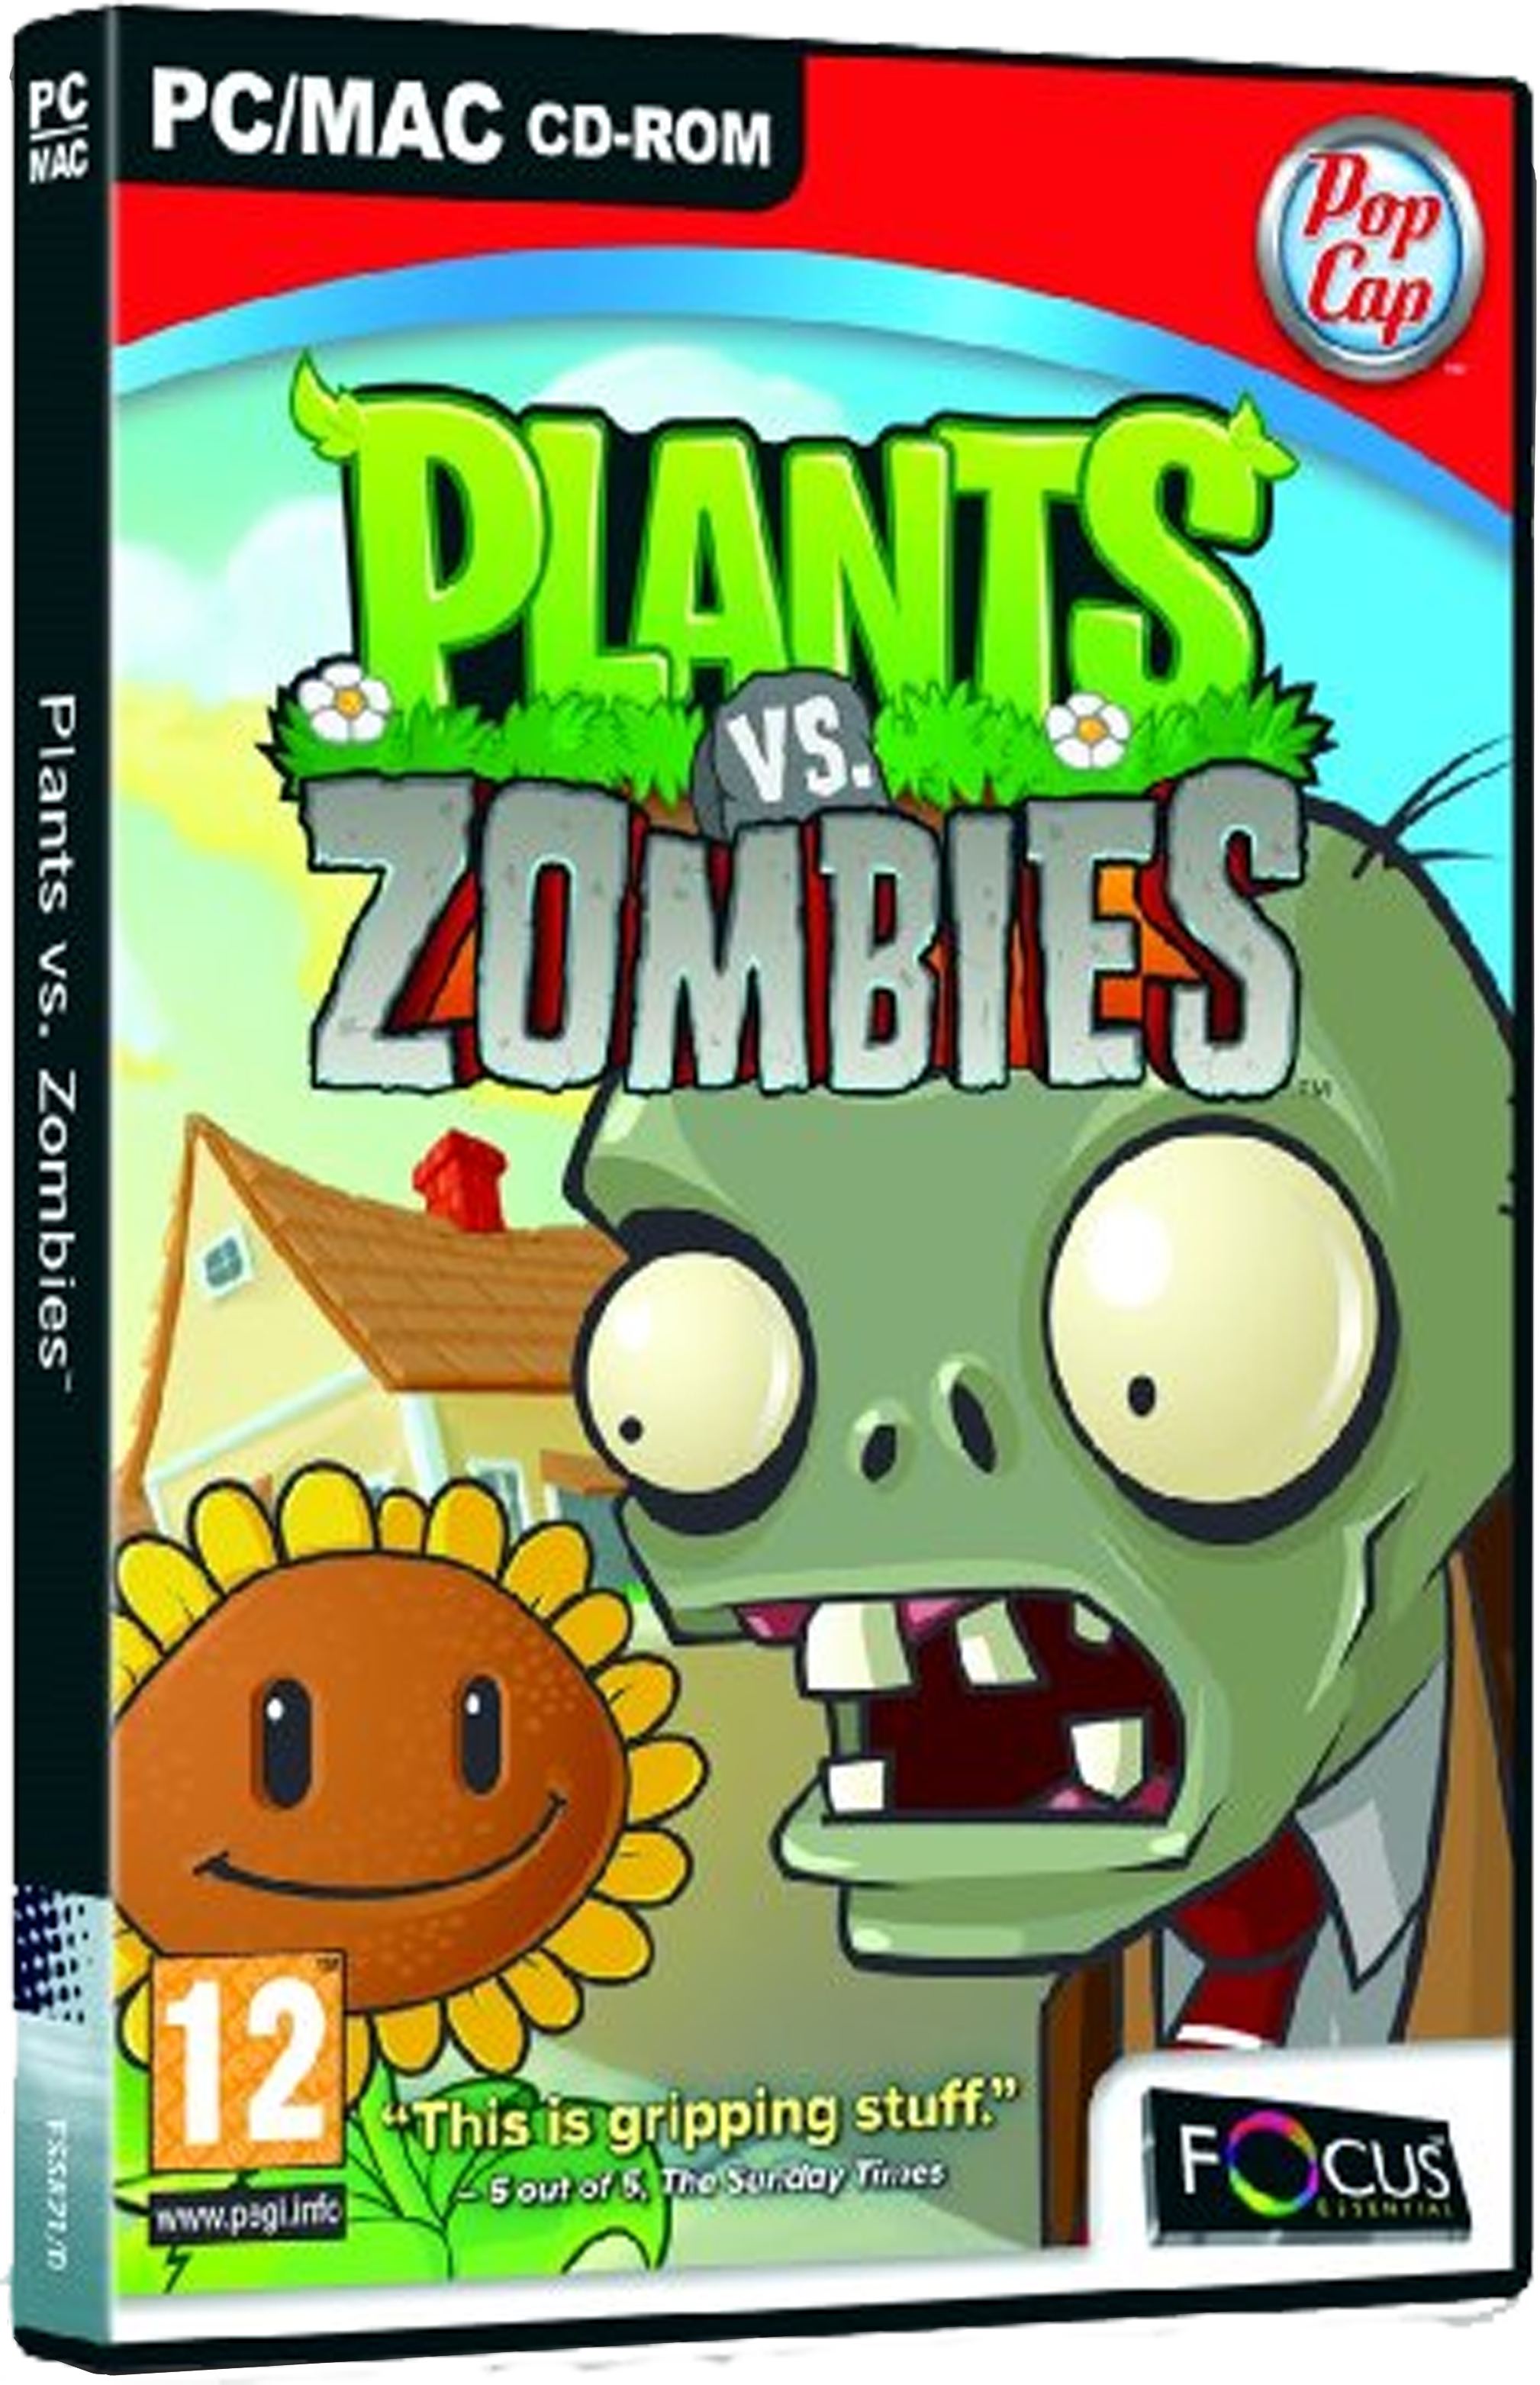 plants-vs-zombies-details-launchbox-games-database